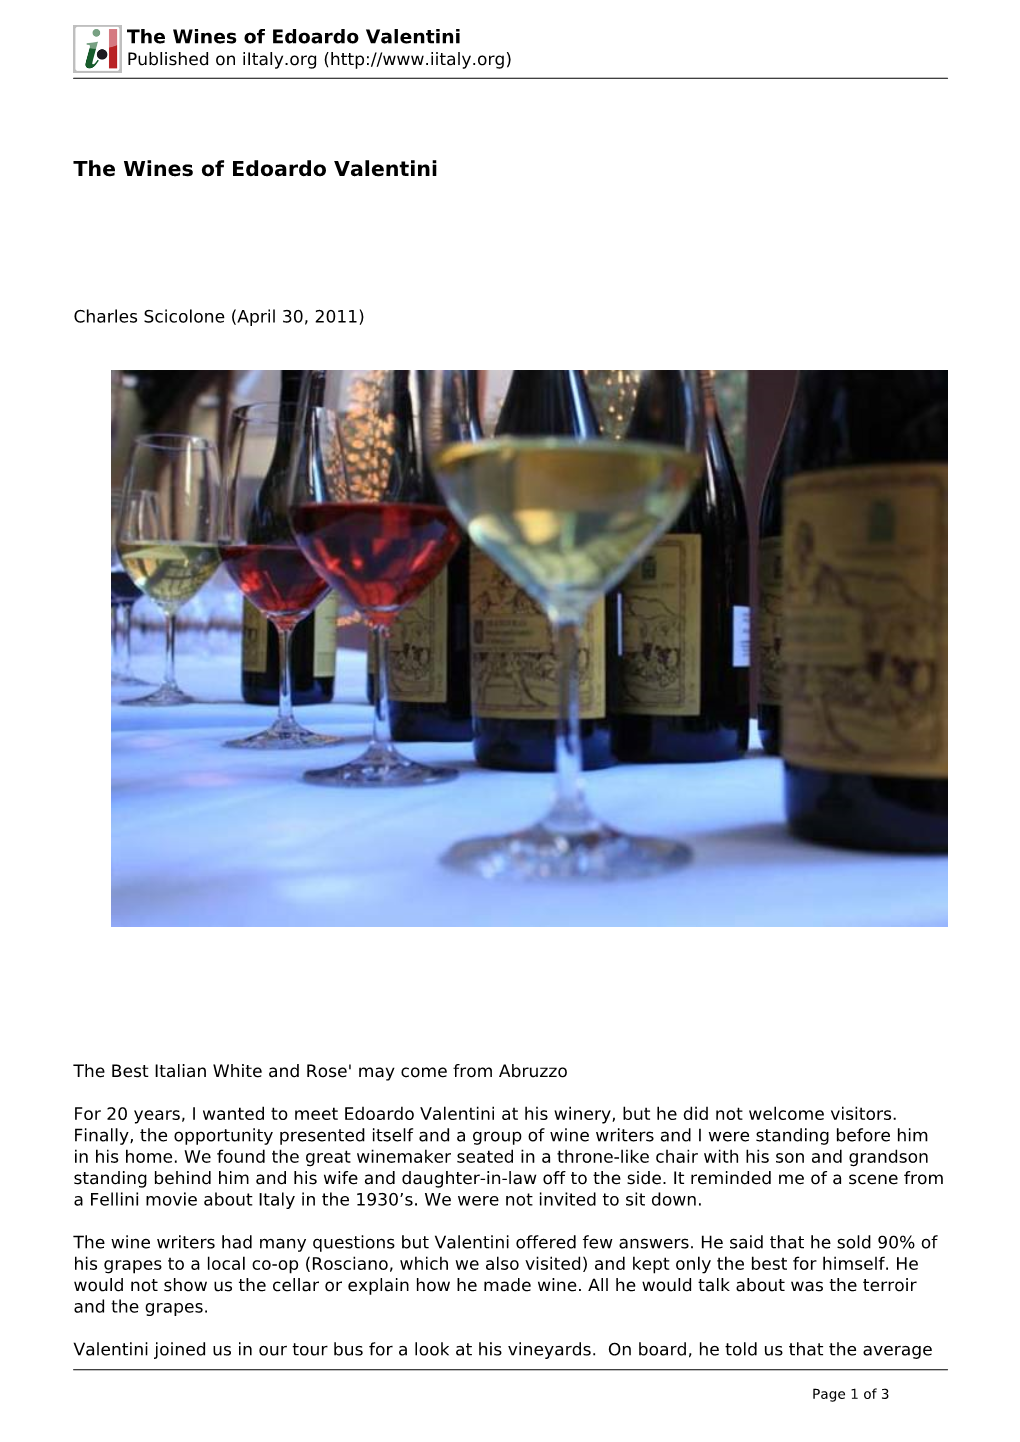 The Wines of Edoardo Valentini Published on Iitaly.Org (